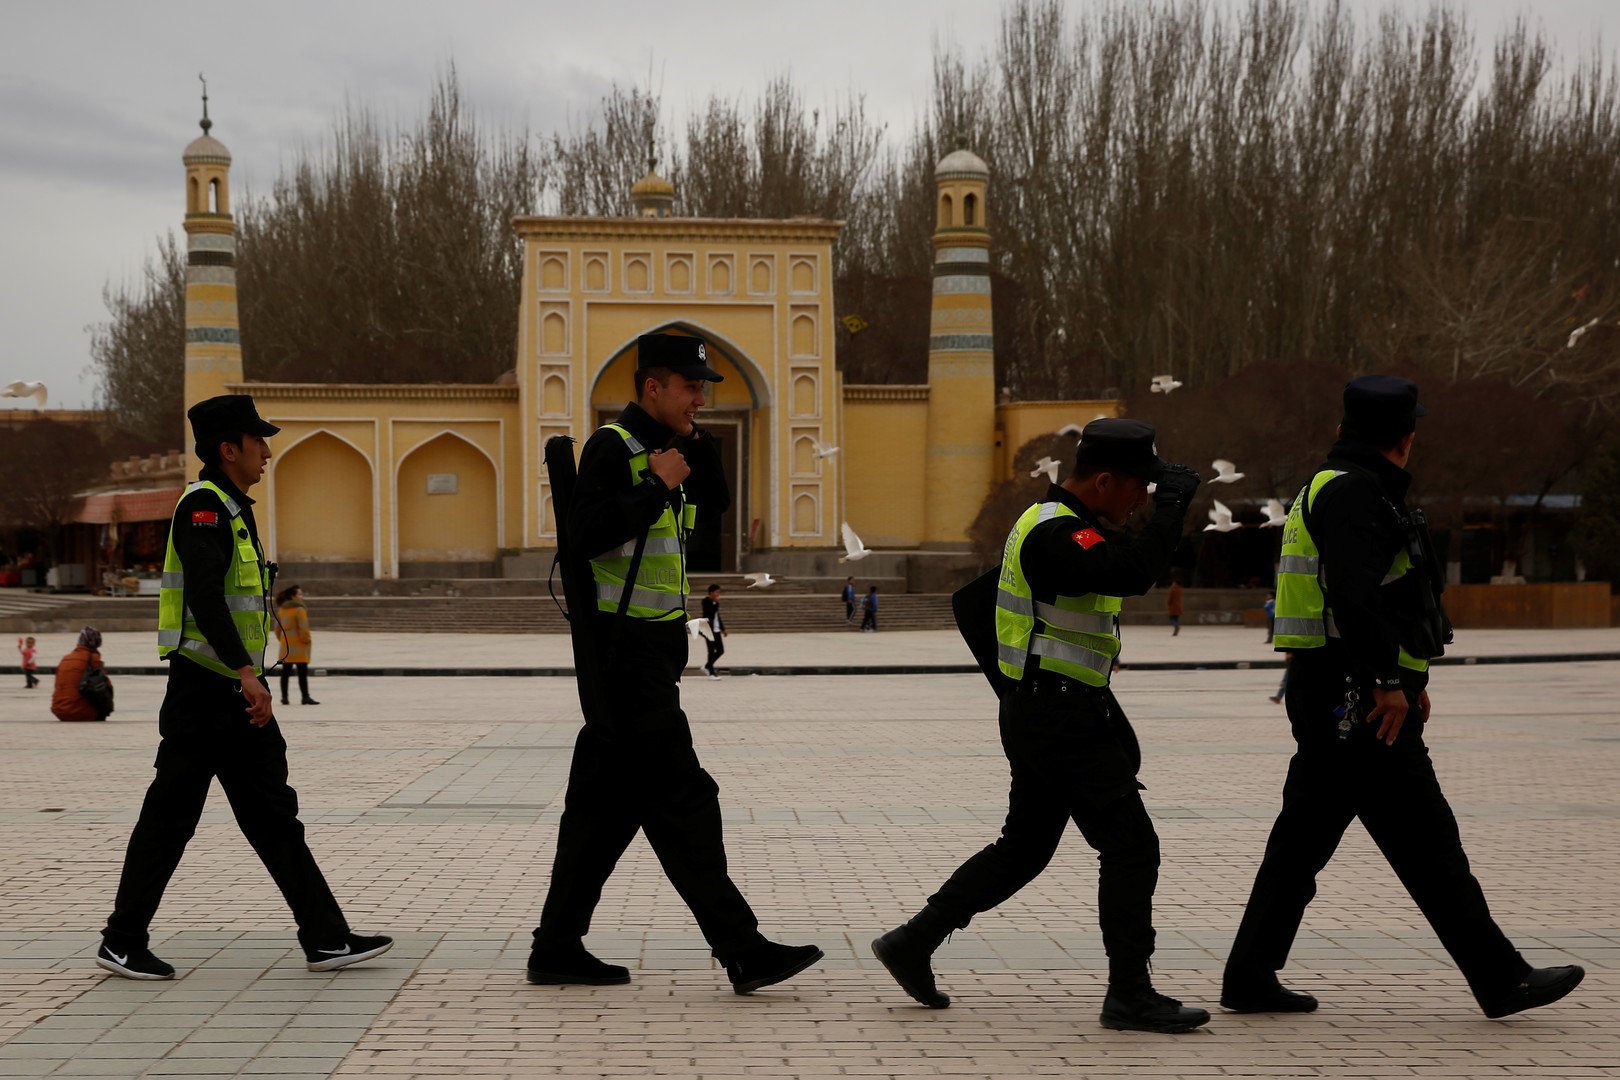 أكثر من 20 دولة تنتقد الصين في الأمم المتحدة بسبب مراكز احتجاز الأويغور